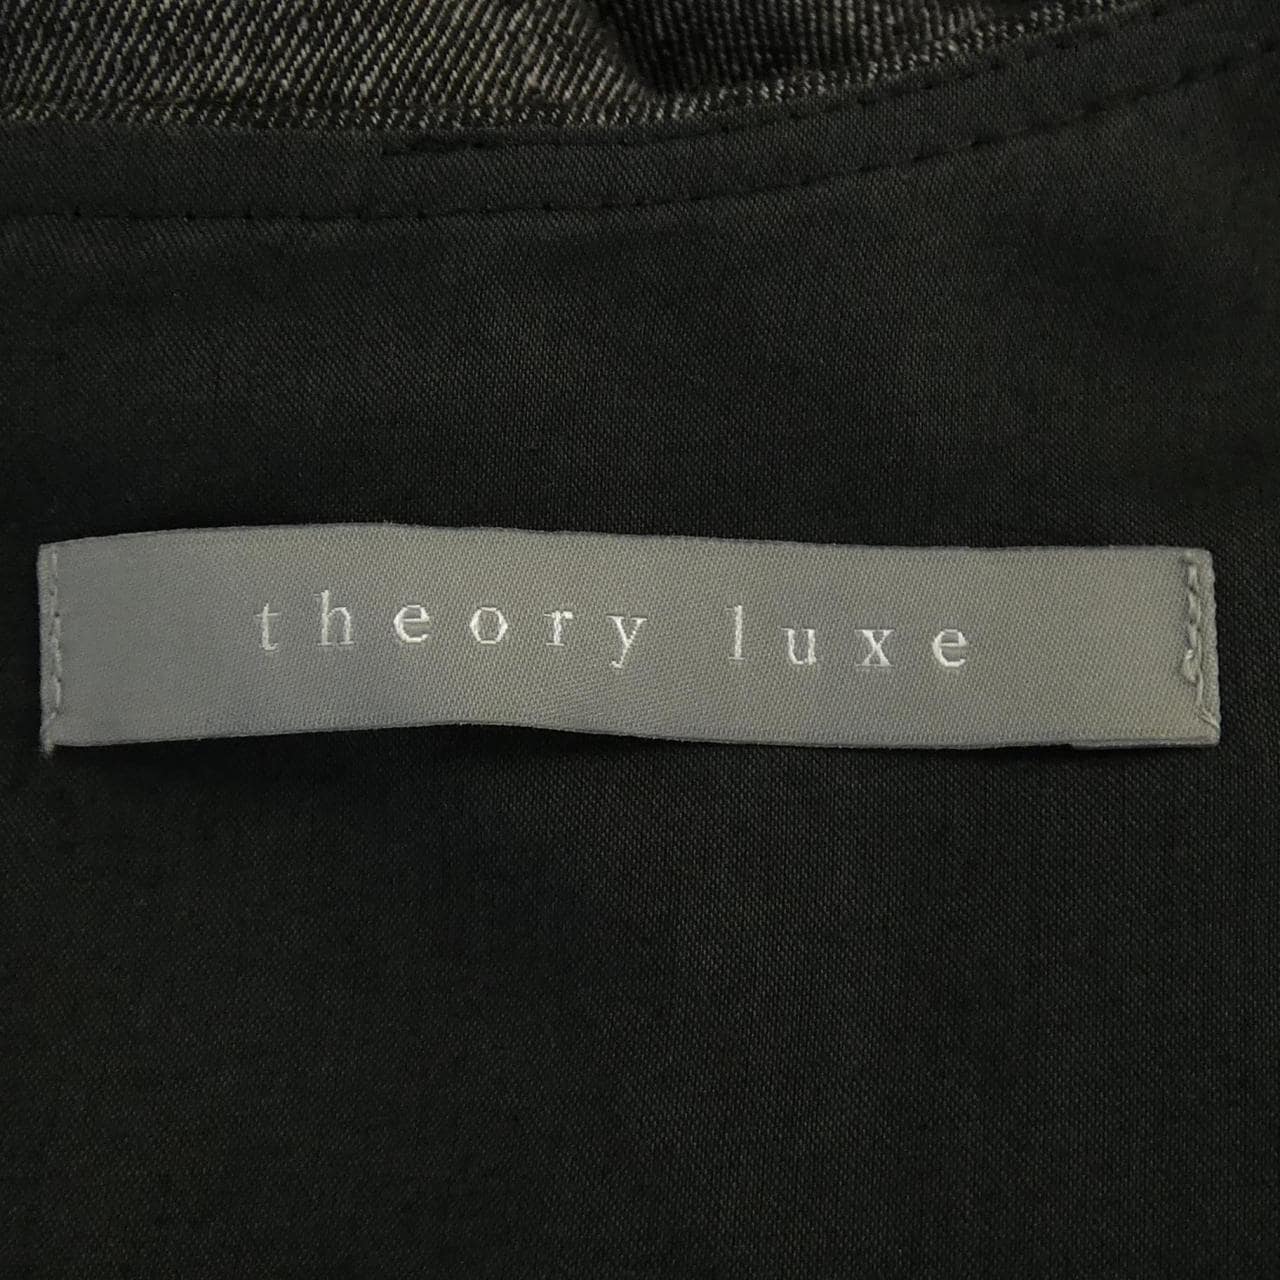 セオリーリュクス Theory luxe ワンピース